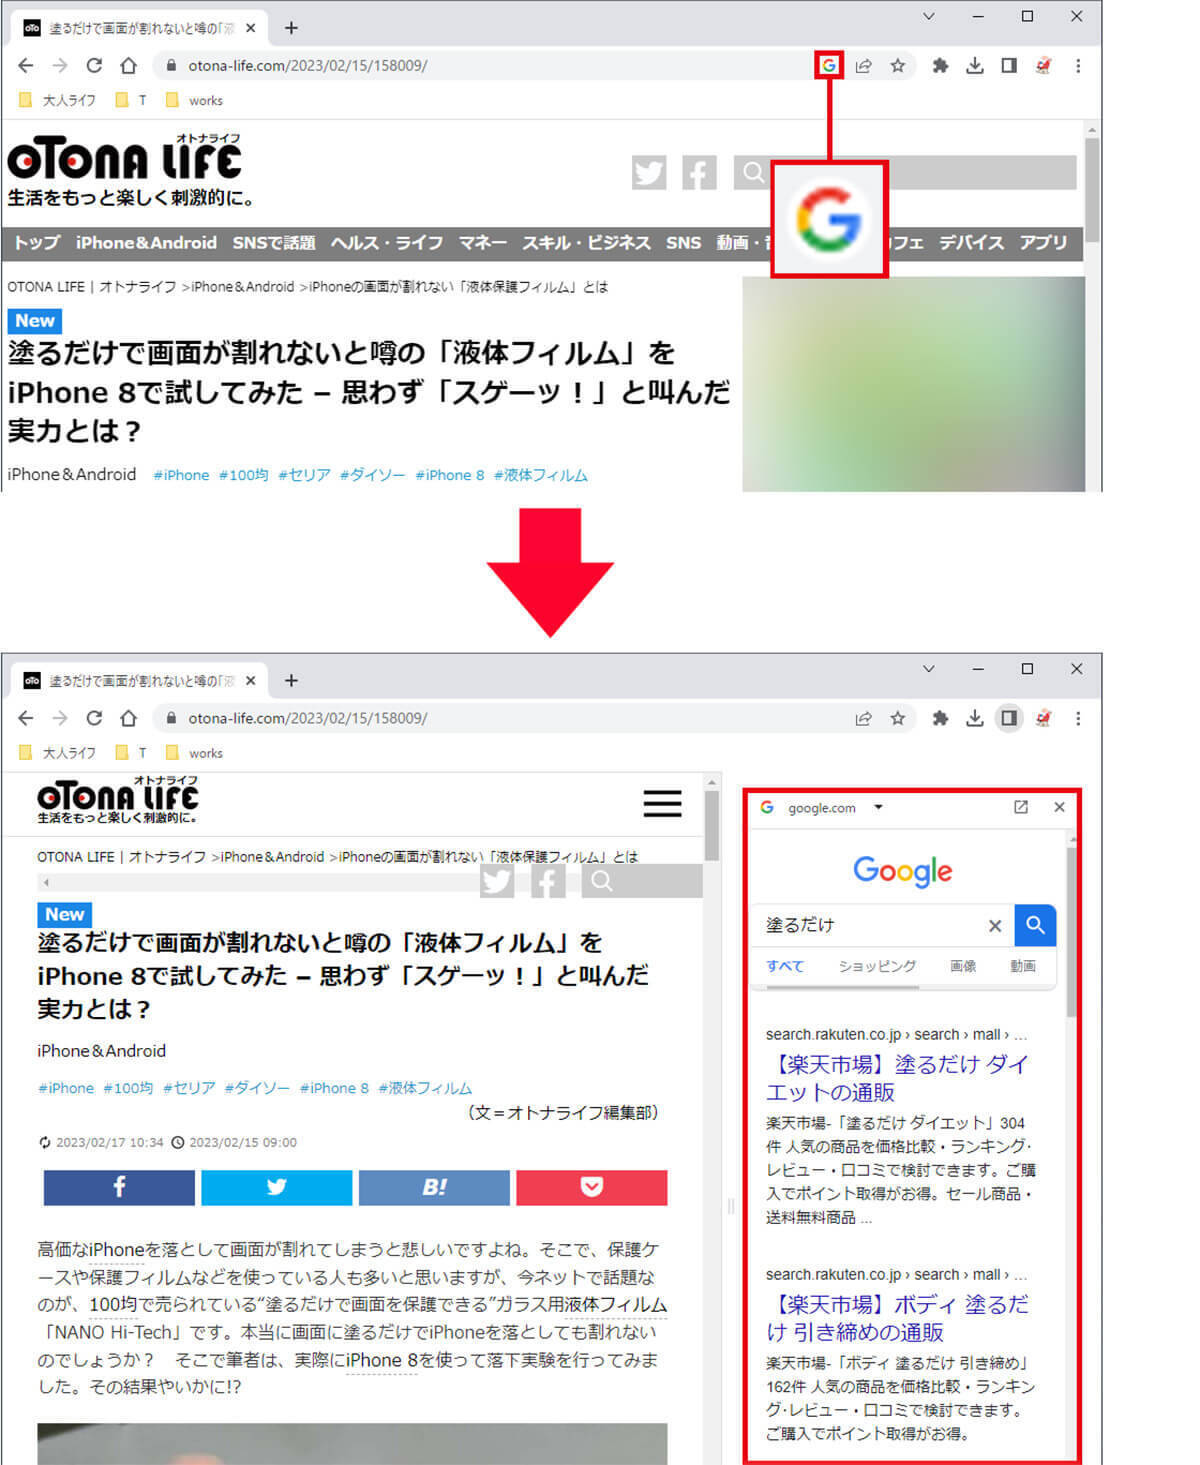 【Google Chrome】便利な隠れ機能7選 − 動画の再生も可能！